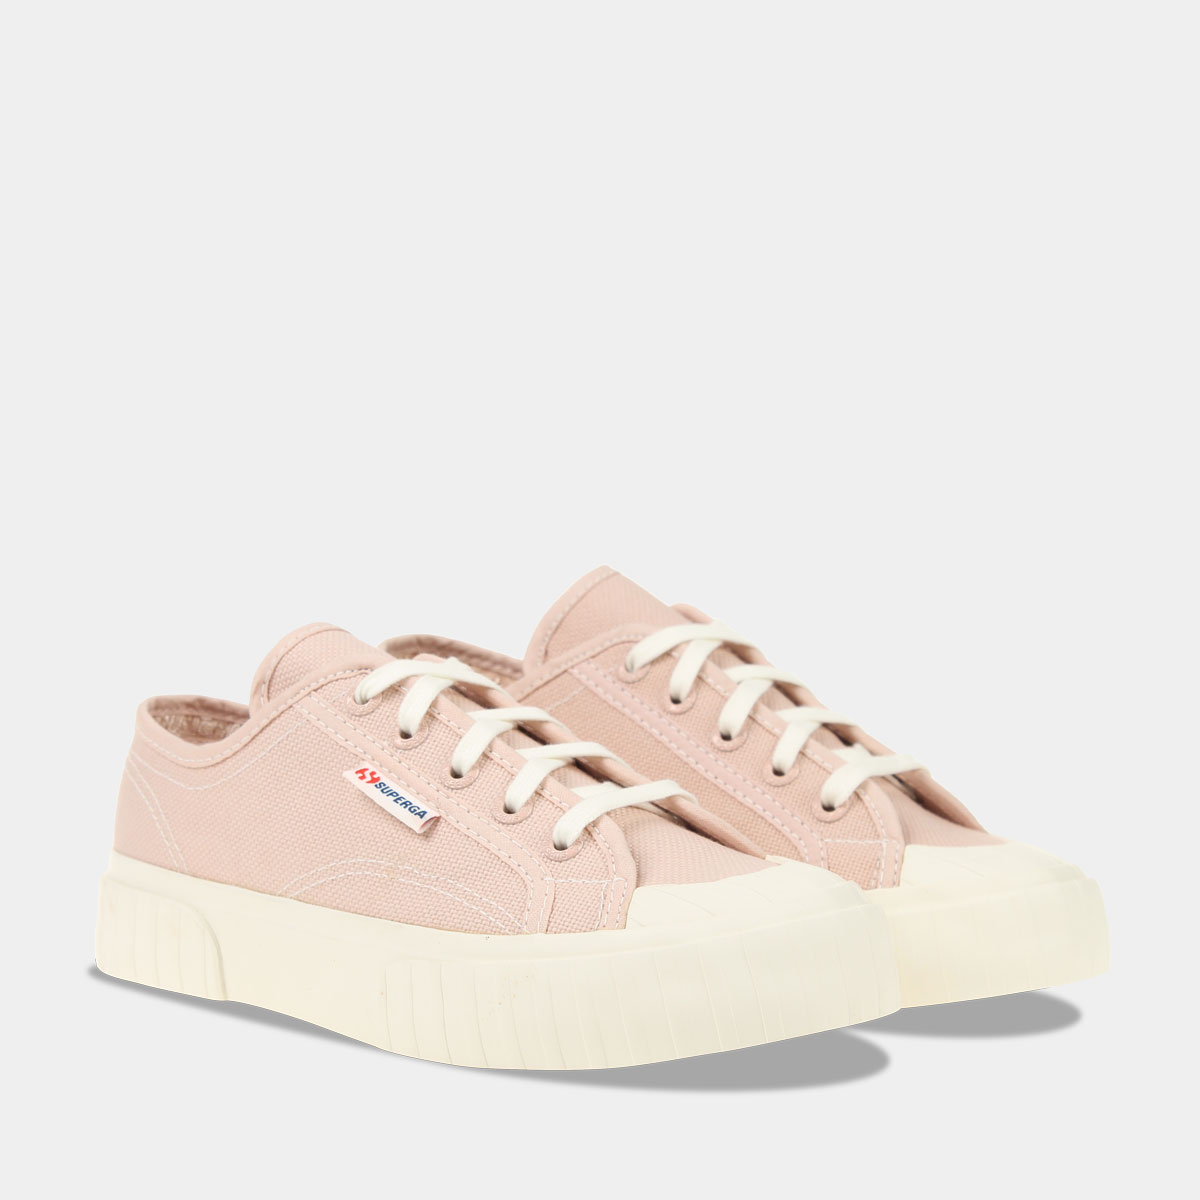 Remmen Reinig de vloer schuintrekken Roze sneakers dames online kopen - Gratis verzending*